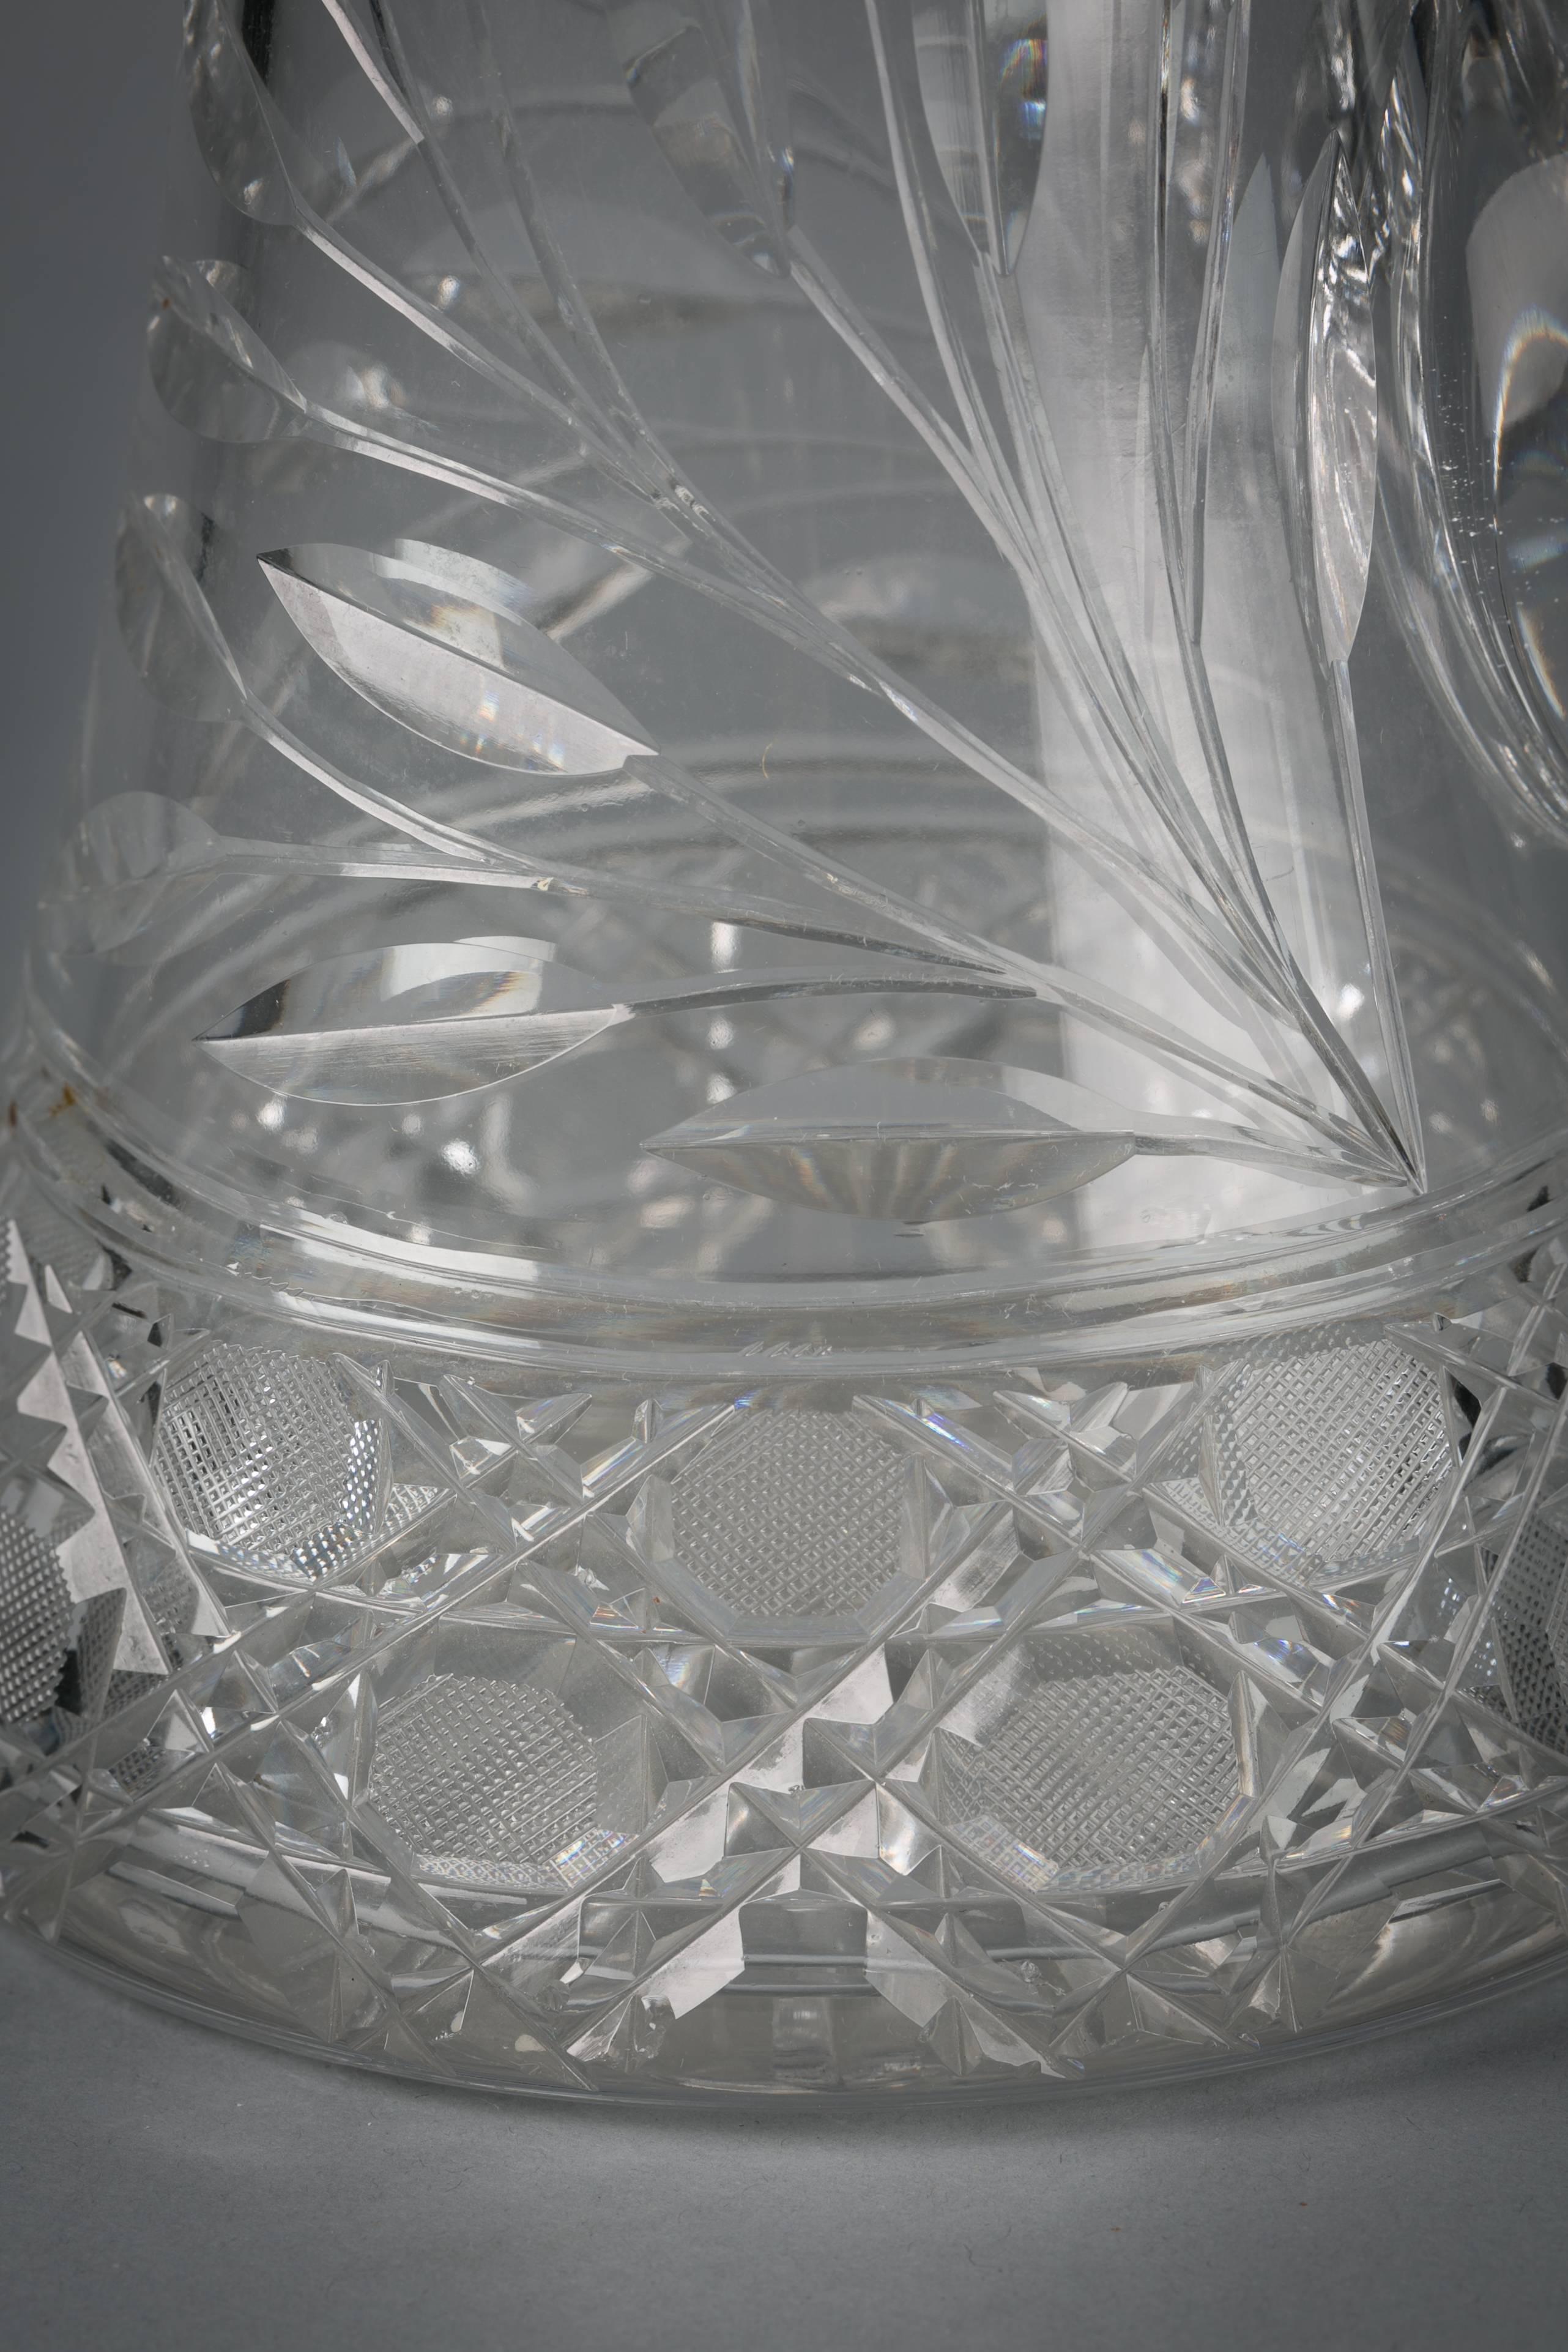 cut glass pitcher